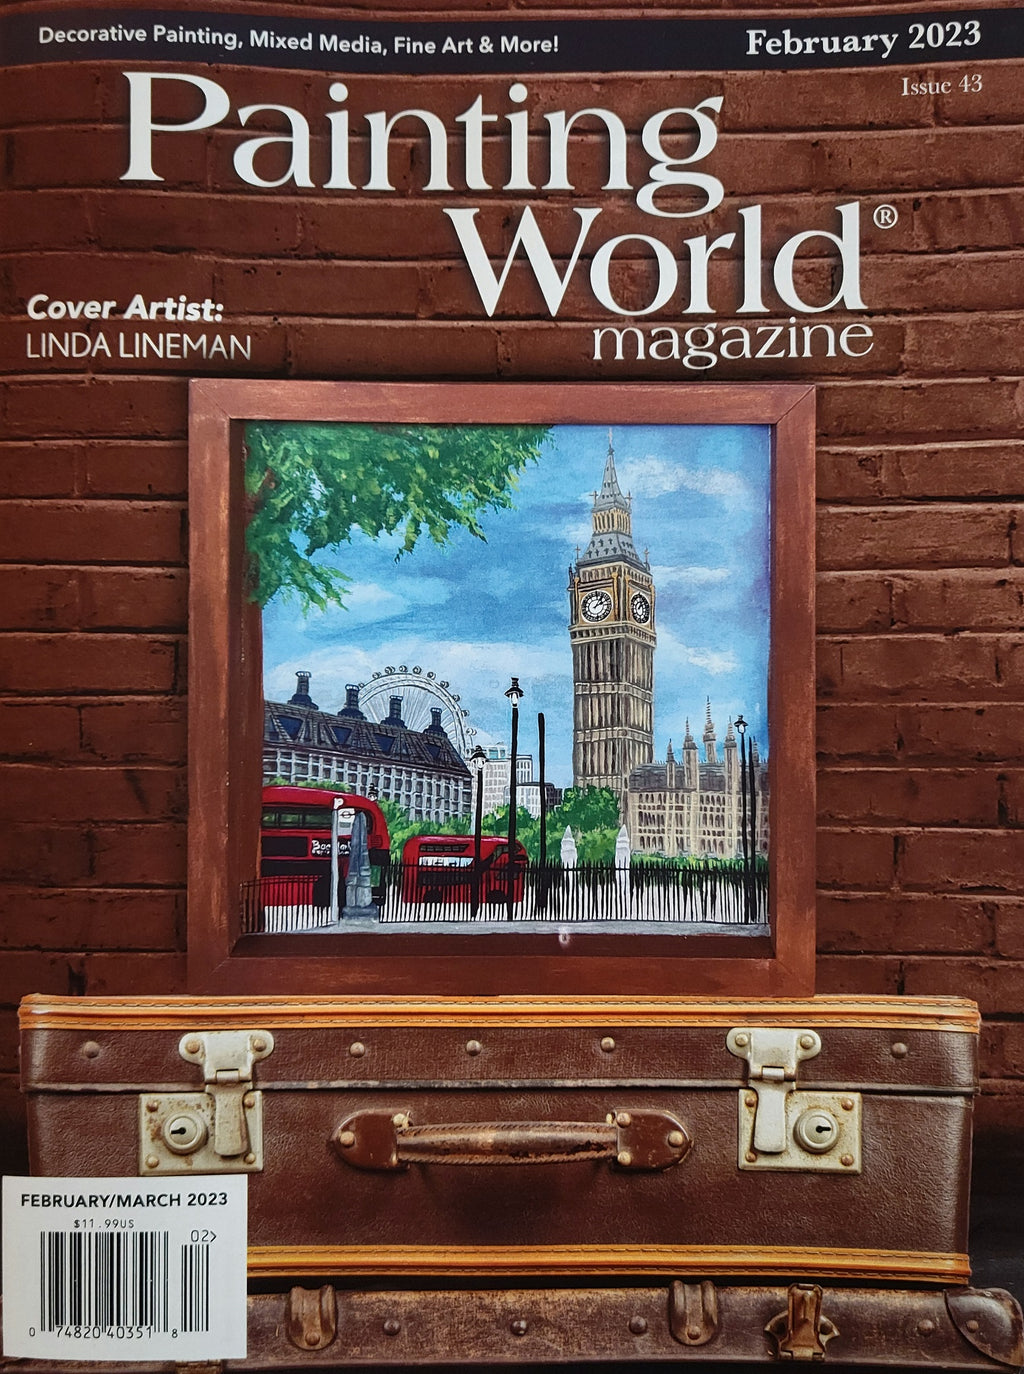 Painting World Magazine, Issue 43, February 2023